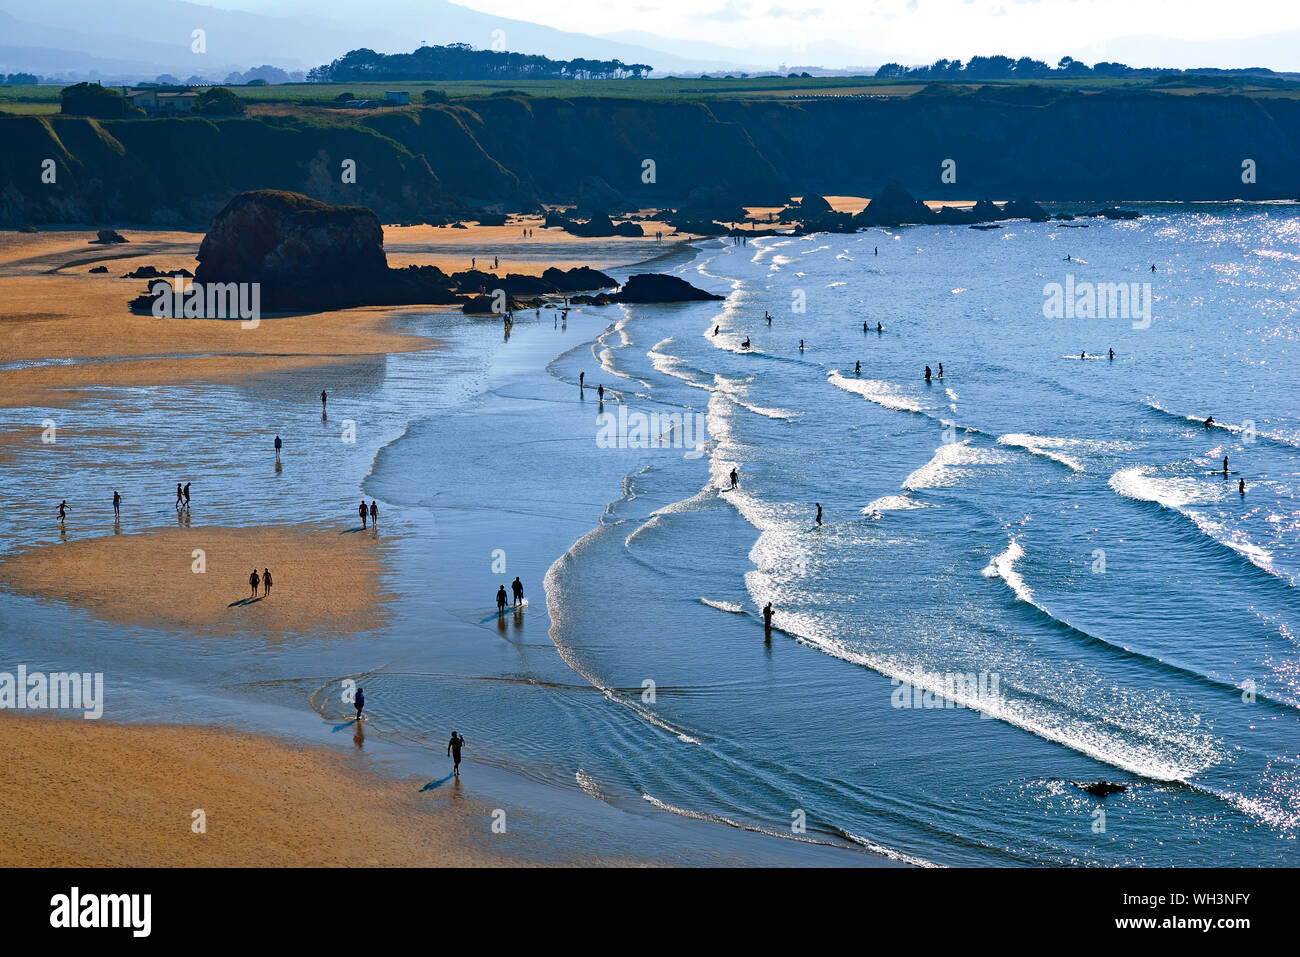 Vue de belle plage de sable et rochers baie visité par les touristes de baignade d'été Banque D'Images